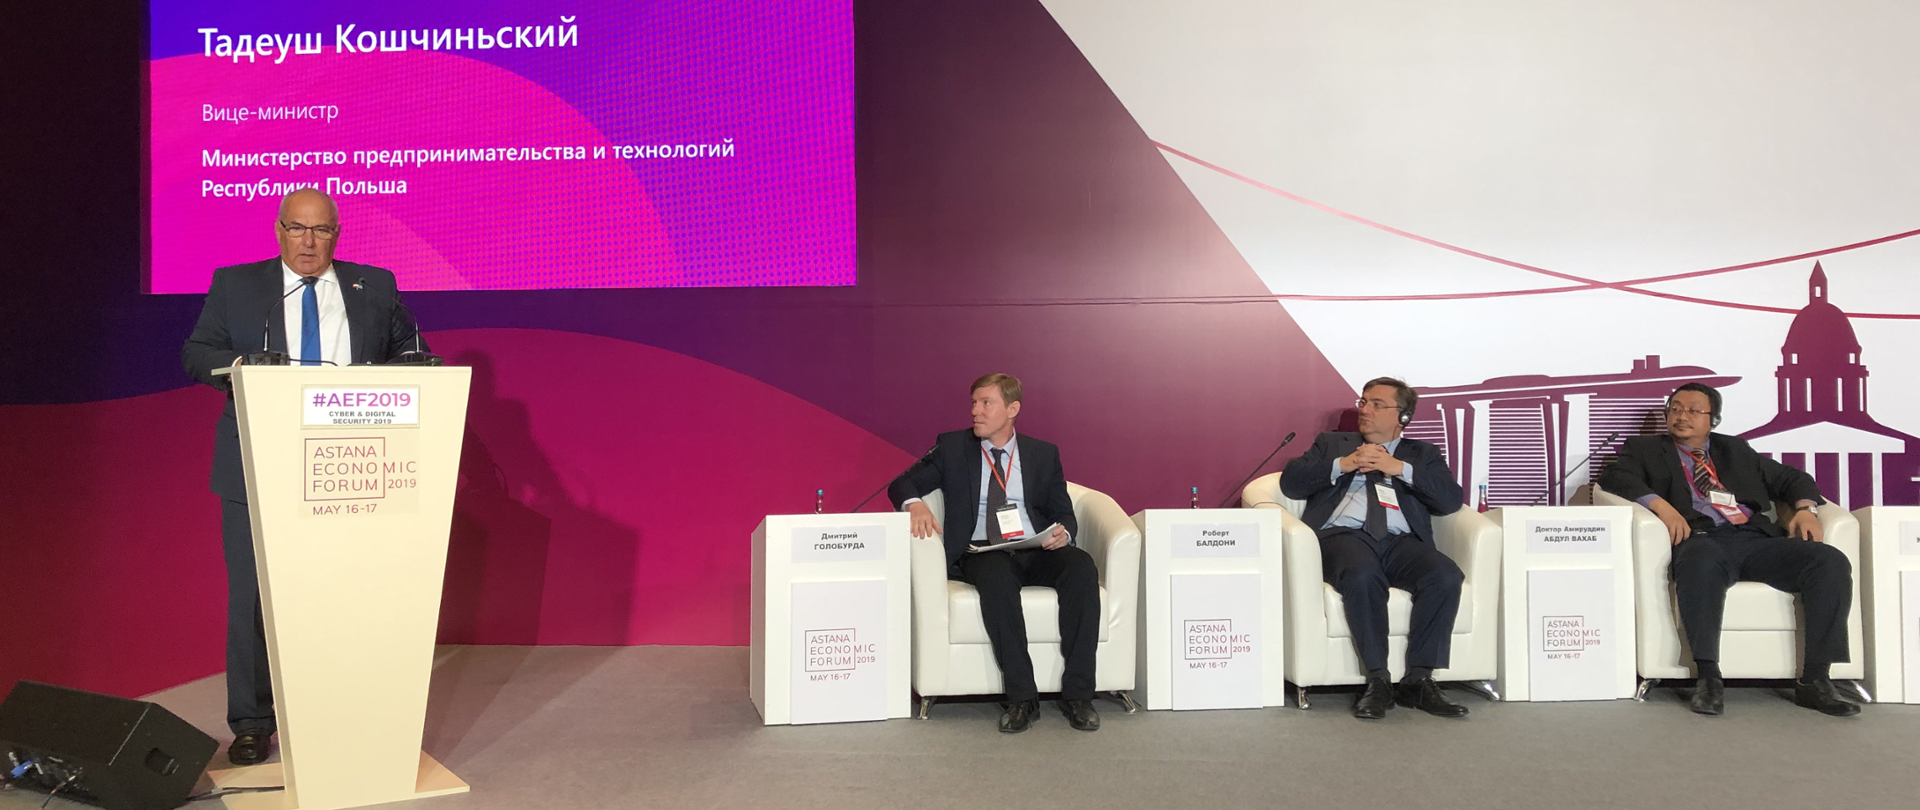 Tadeusz Kościński podczas wystąpienia na Astana Economic Forum 2019